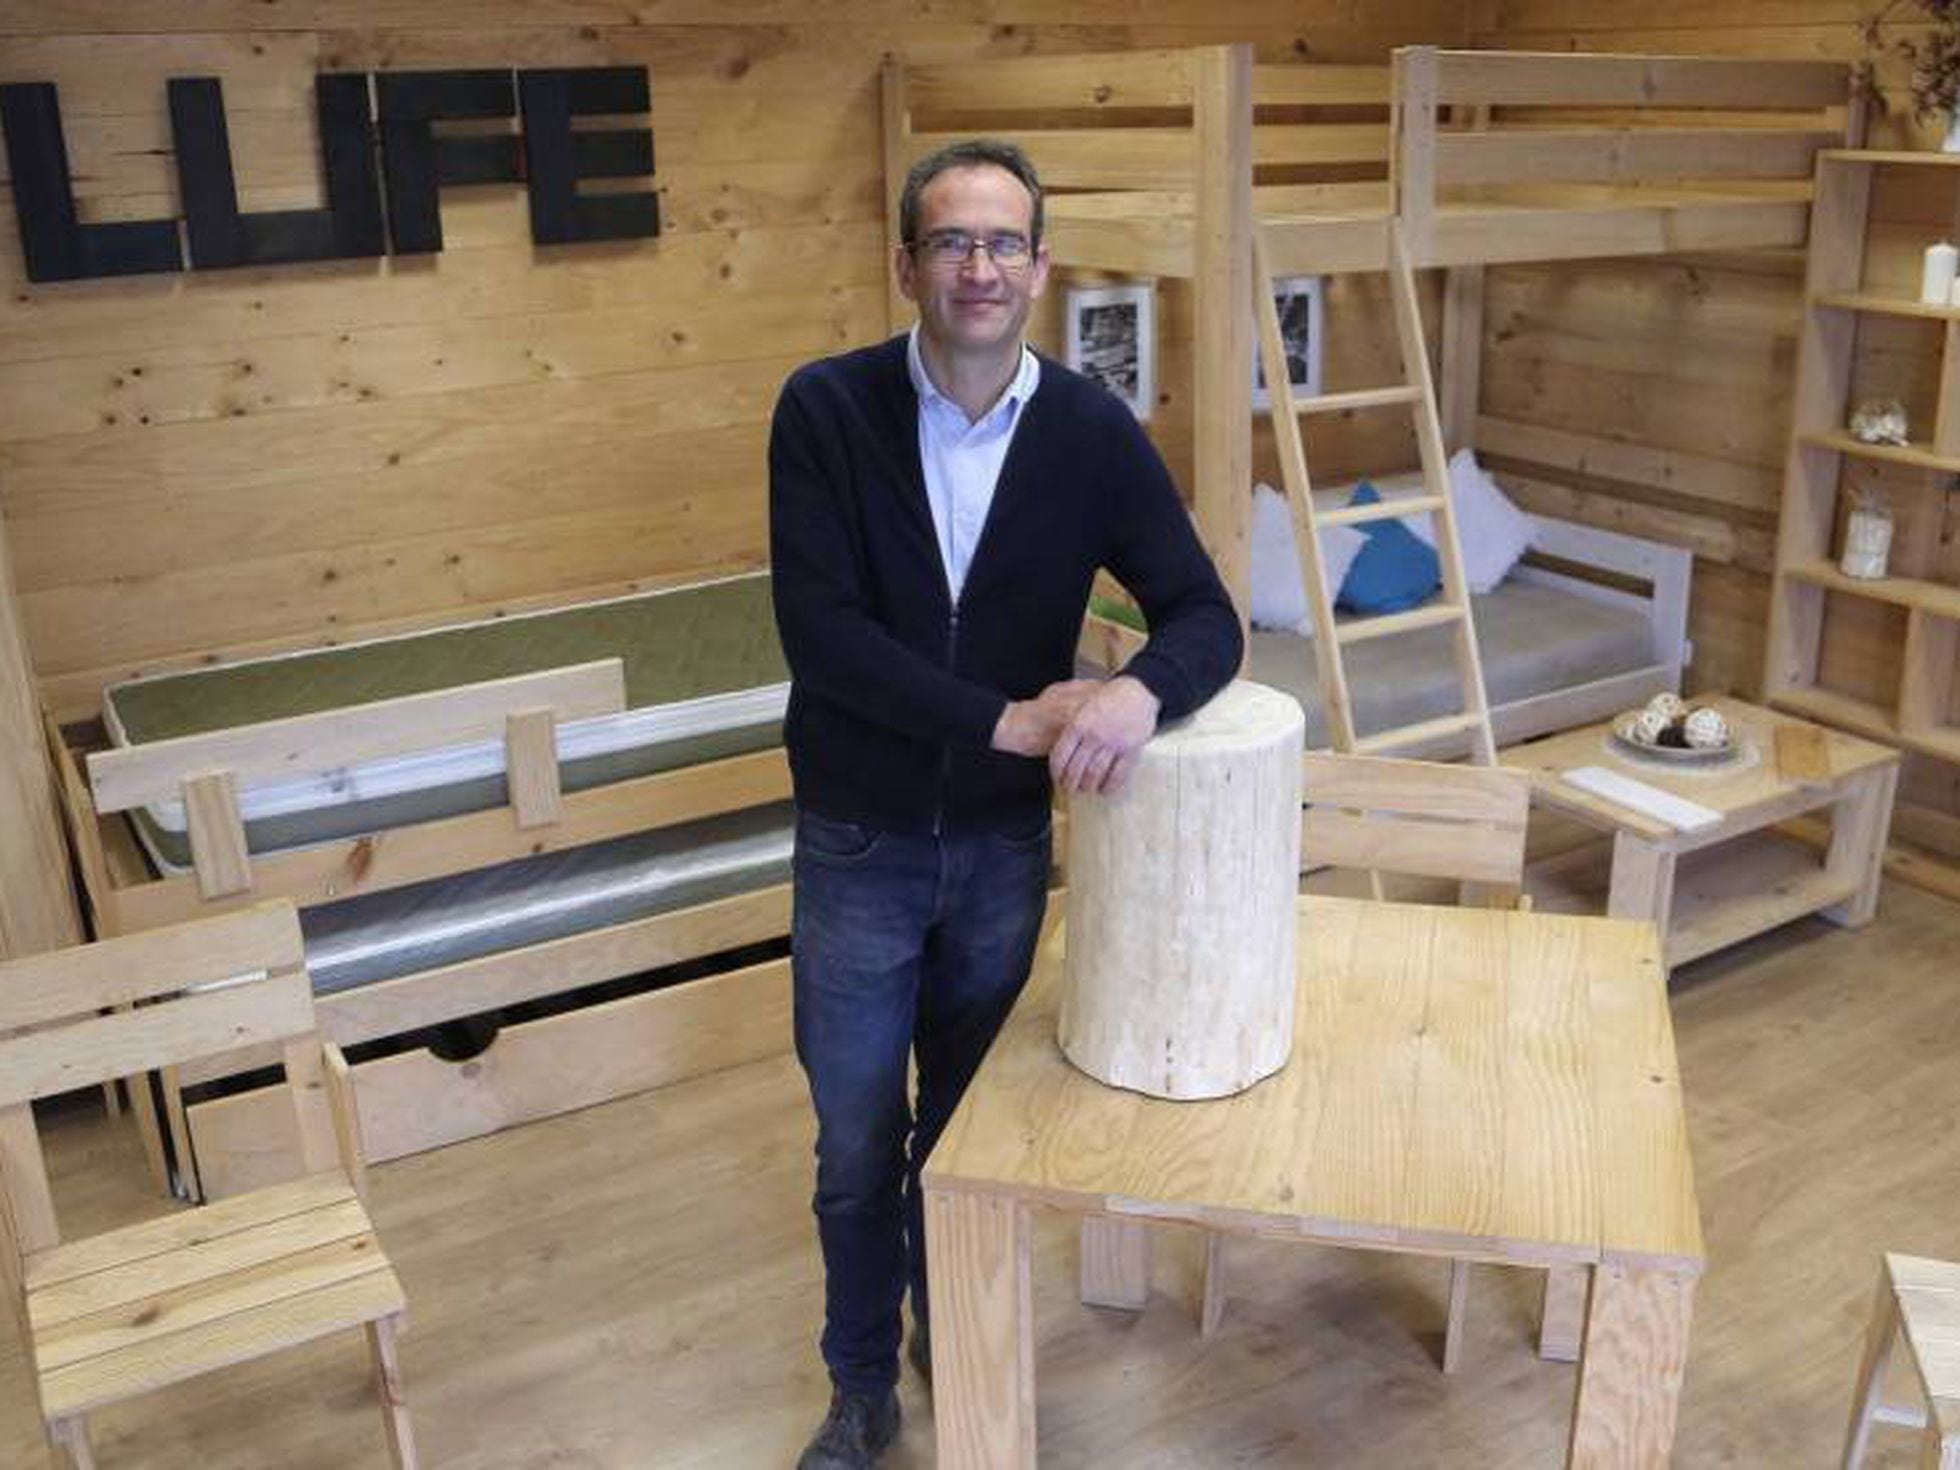 Muebles Lufe: La de 30 euros que triunfa 'online' | Economía | EL PAÍS